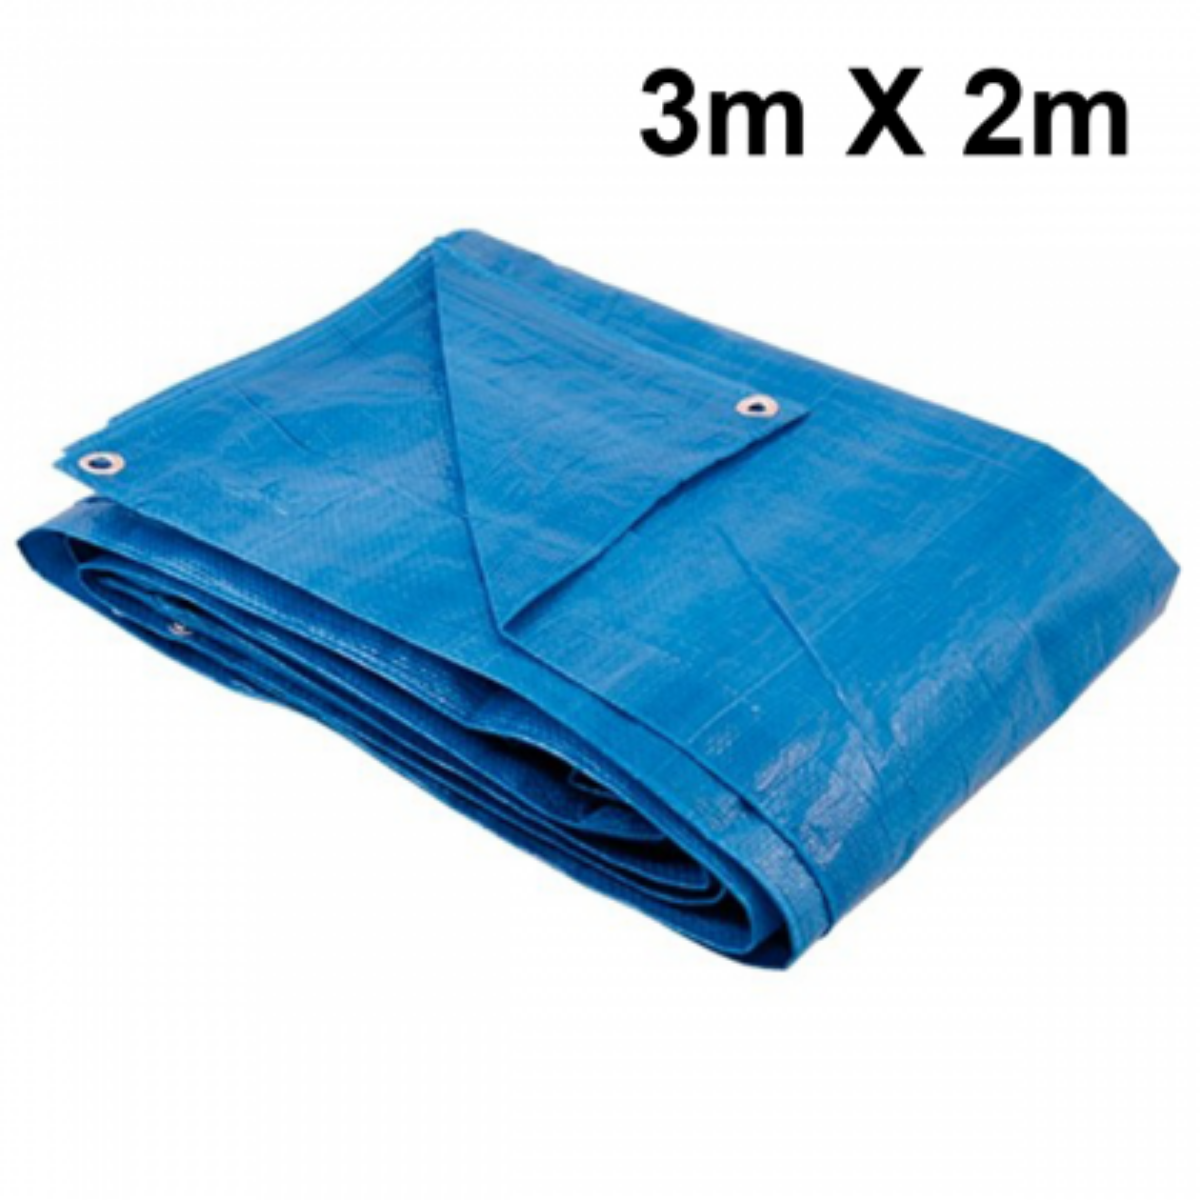 Lona 3x2 Azul Impermeável Carreteiro Piscina 200 Micras Grossa Reforçada